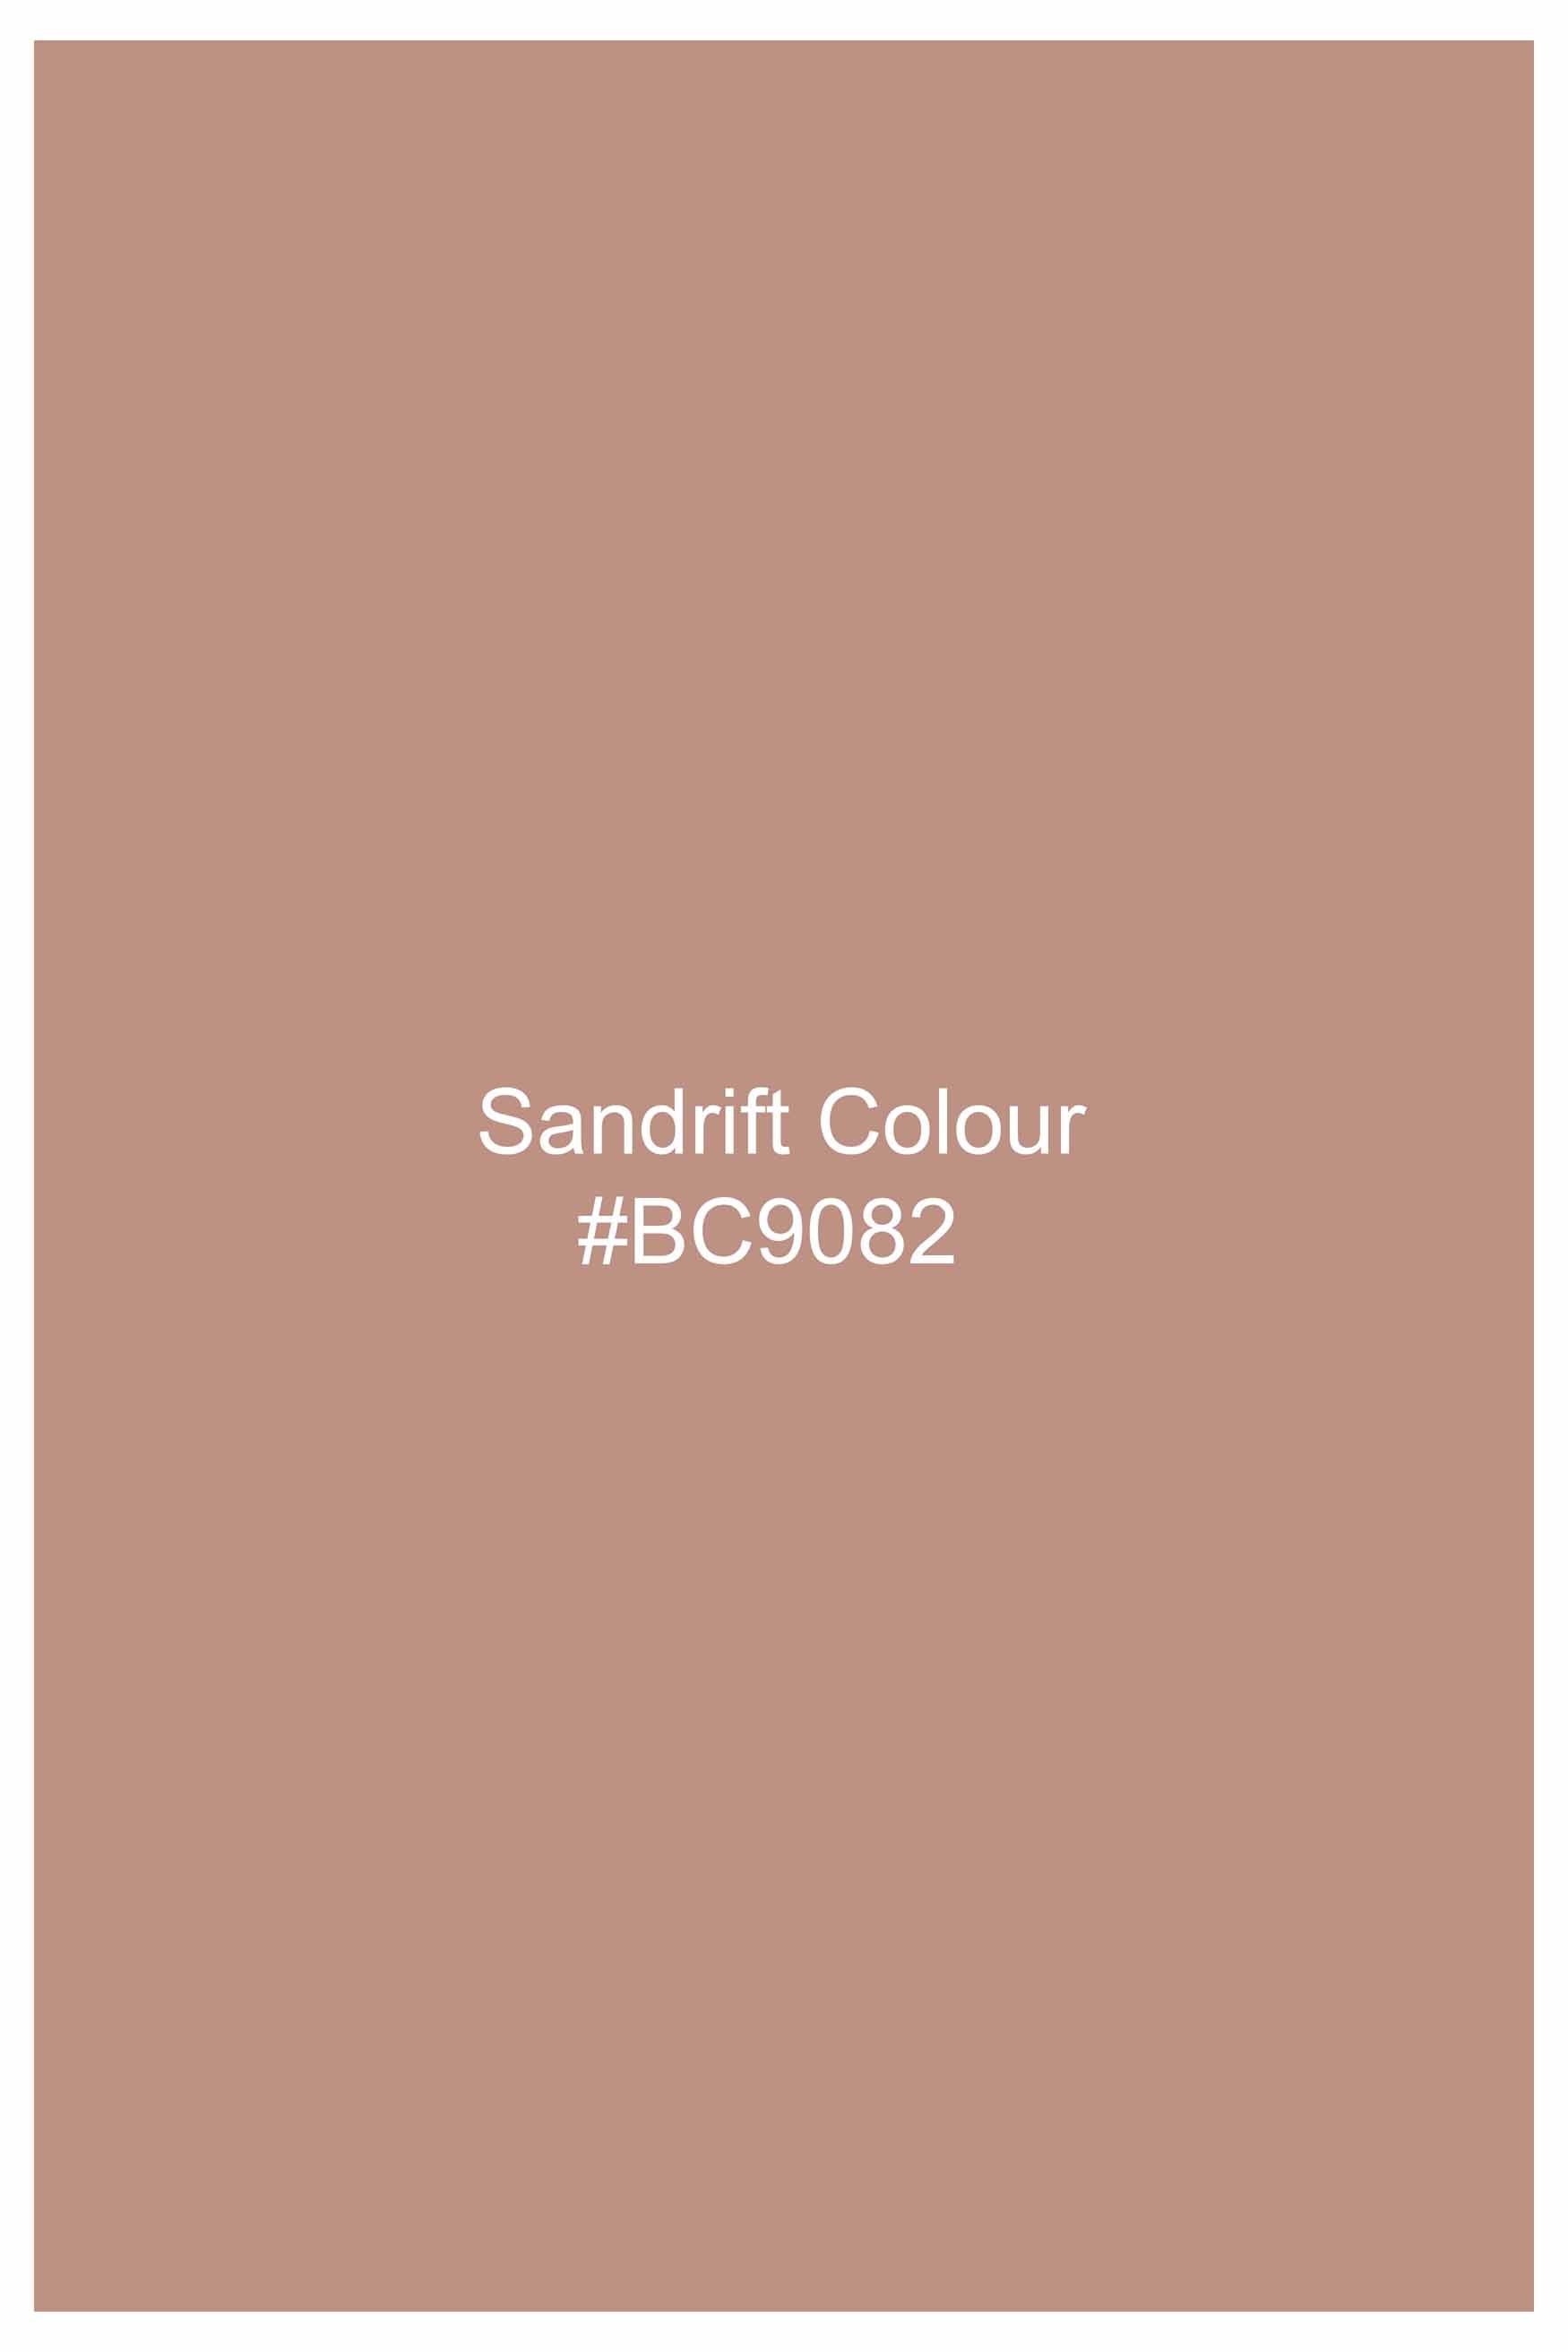 Sandrift Peach Subtle Sheen Super Soft Premium Cotton Mandarin Shirt